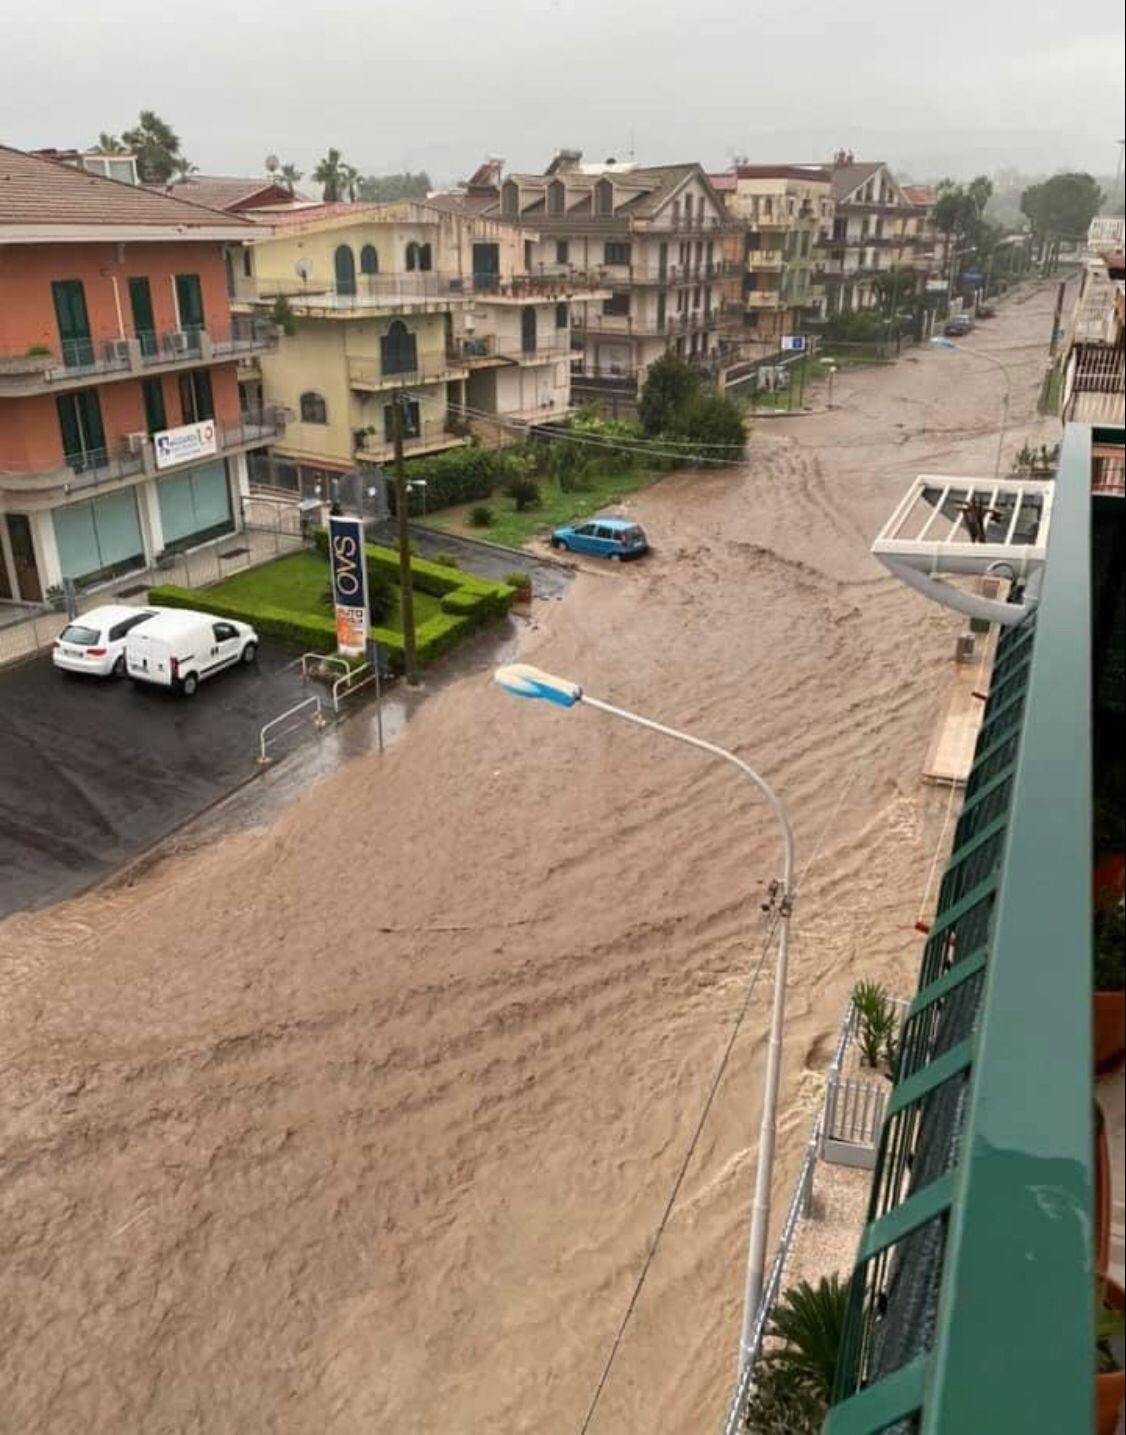 Eventi alluvionali in Sicilia tra ottobre e novembre 2021: primi contributi per le spese di emergenza